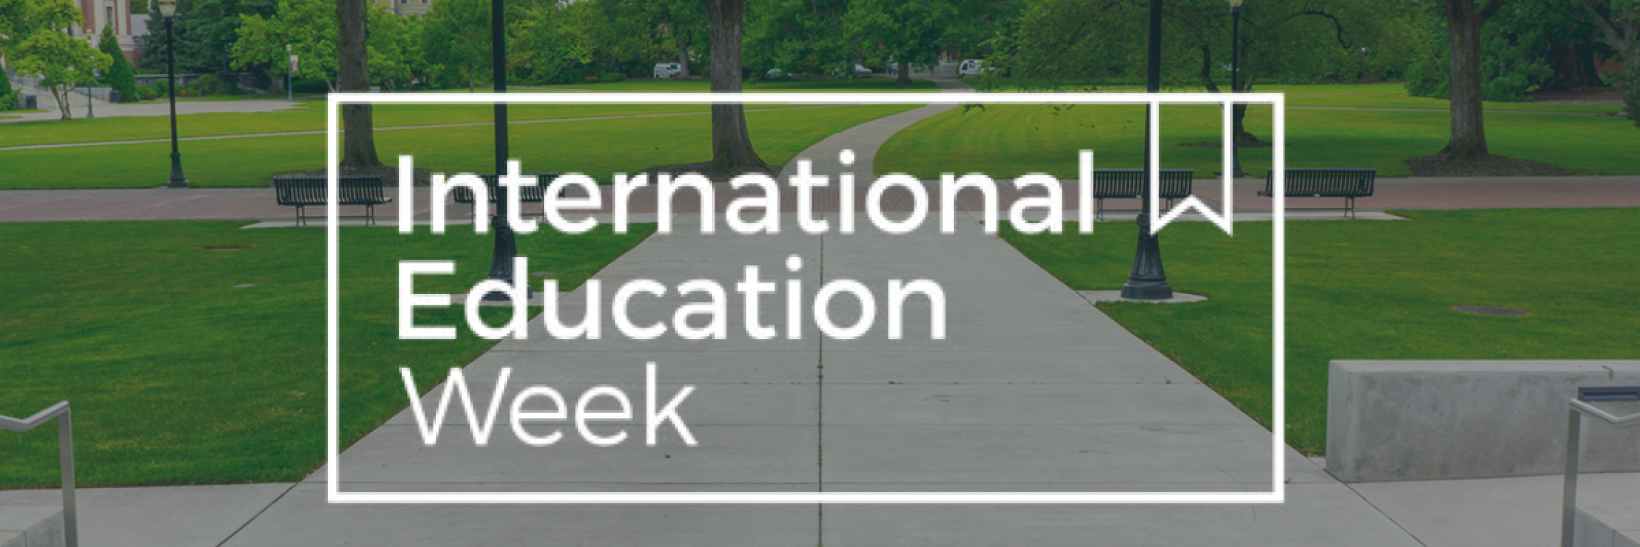 International Education Week.